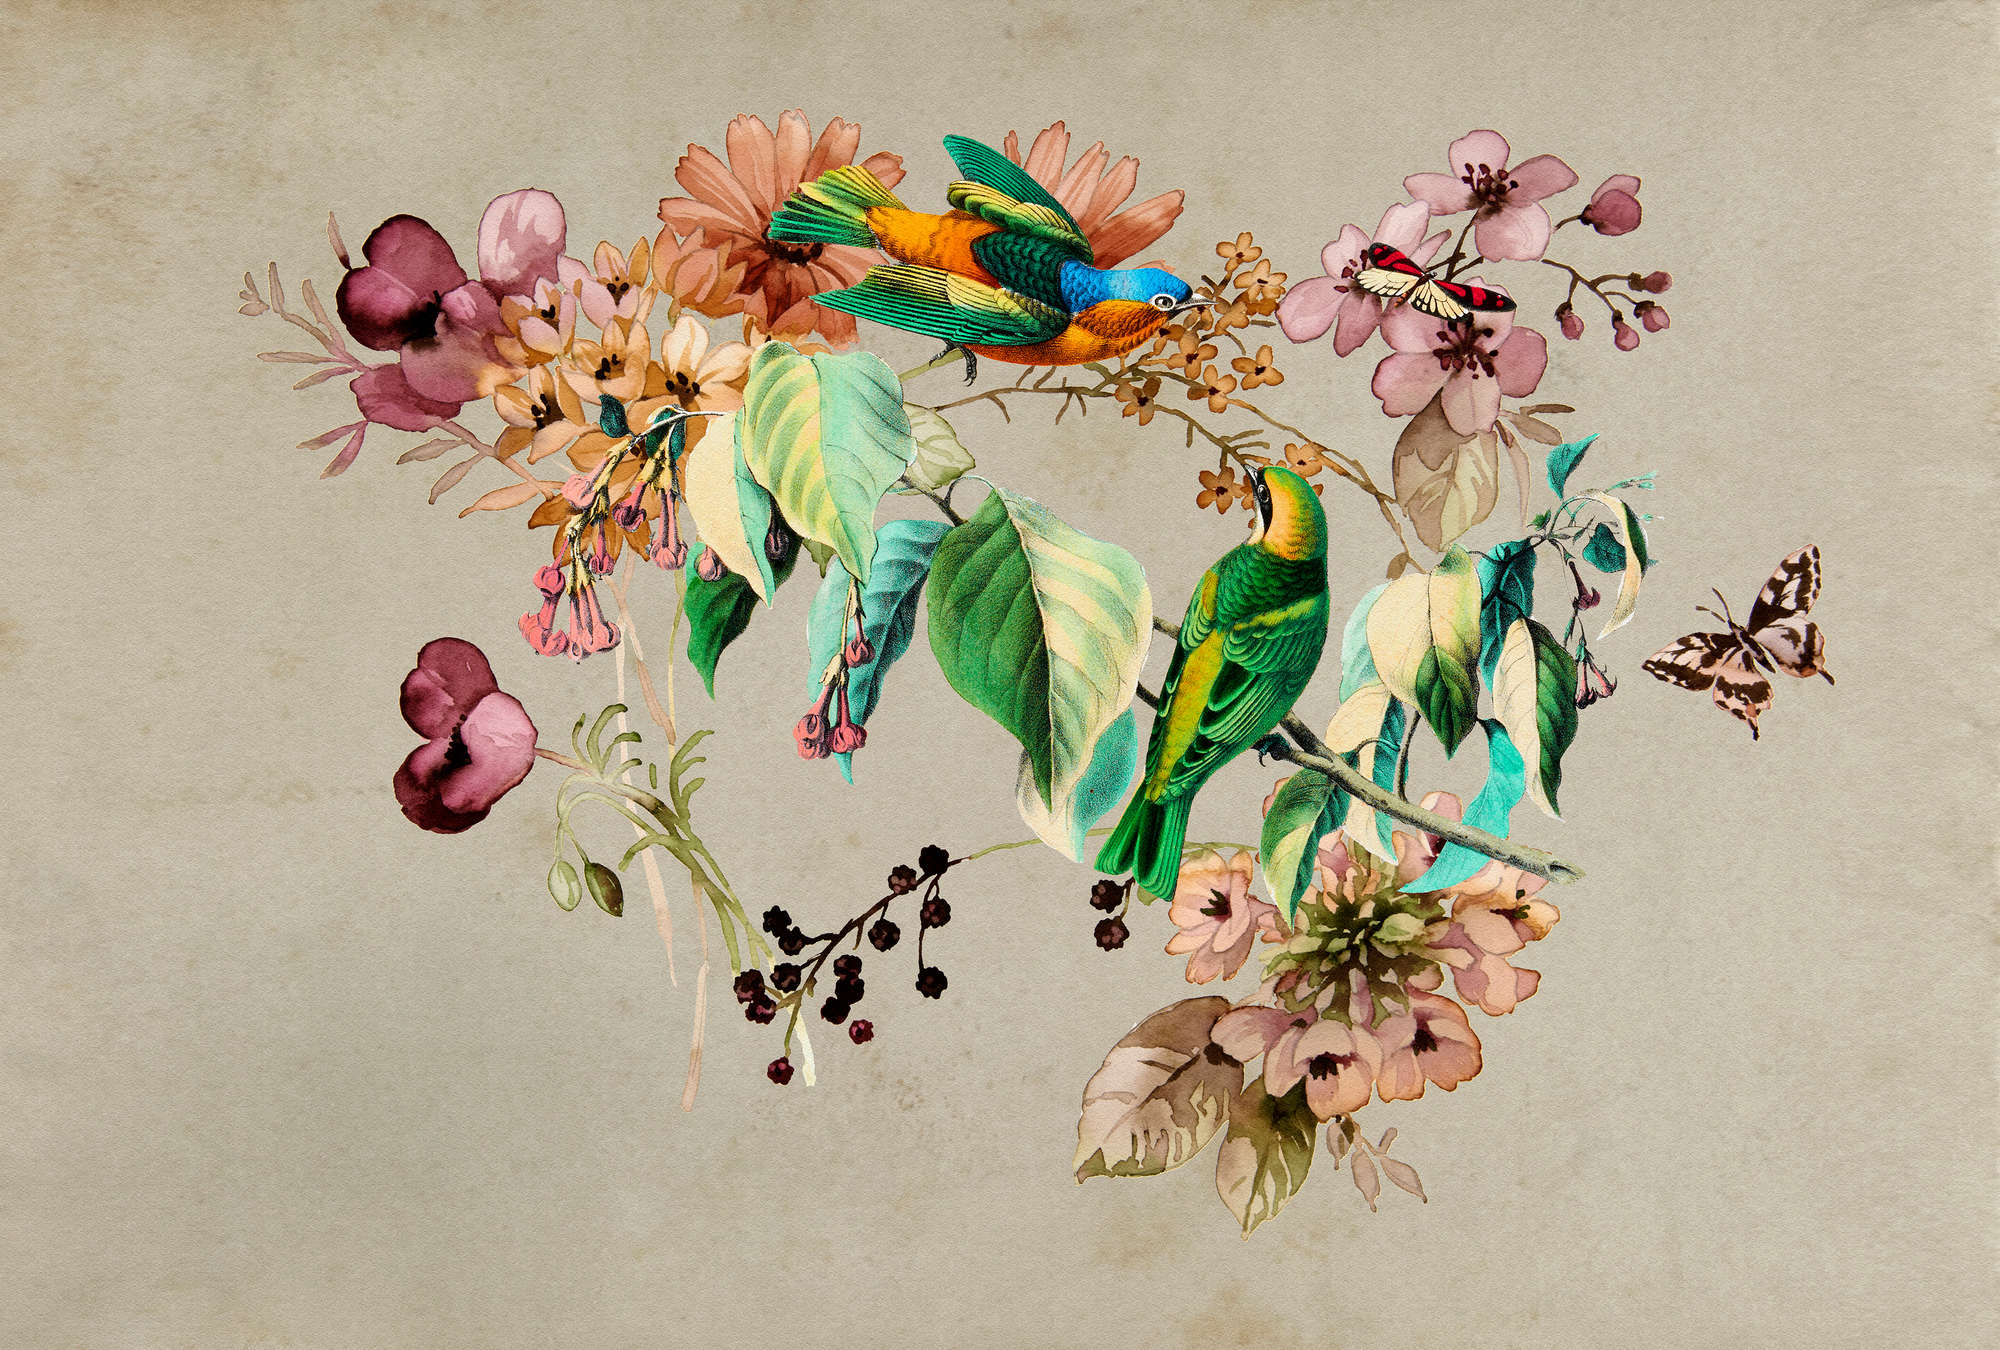             Love Nest 1 - papier peint avec des fleurs aquarelles et des oiseaux colorés
        